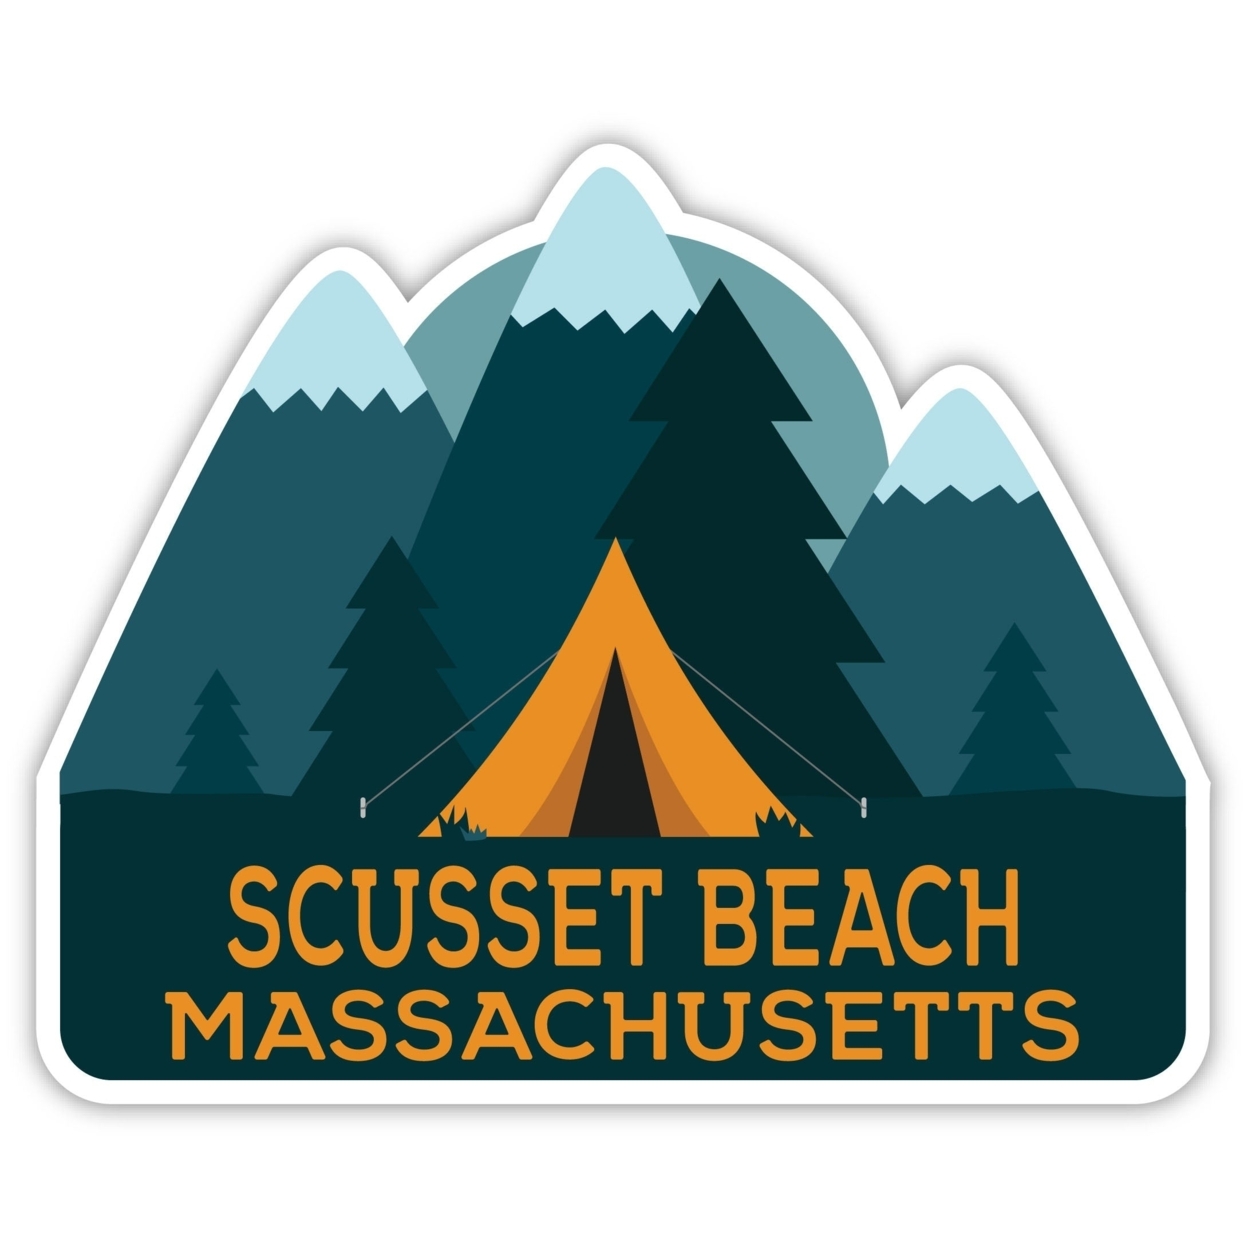 Scusset Beach Massachusetts Souvenir Decorative Stickers (Choose Theme And Size) - Single Unit, 4-Inch, Tent